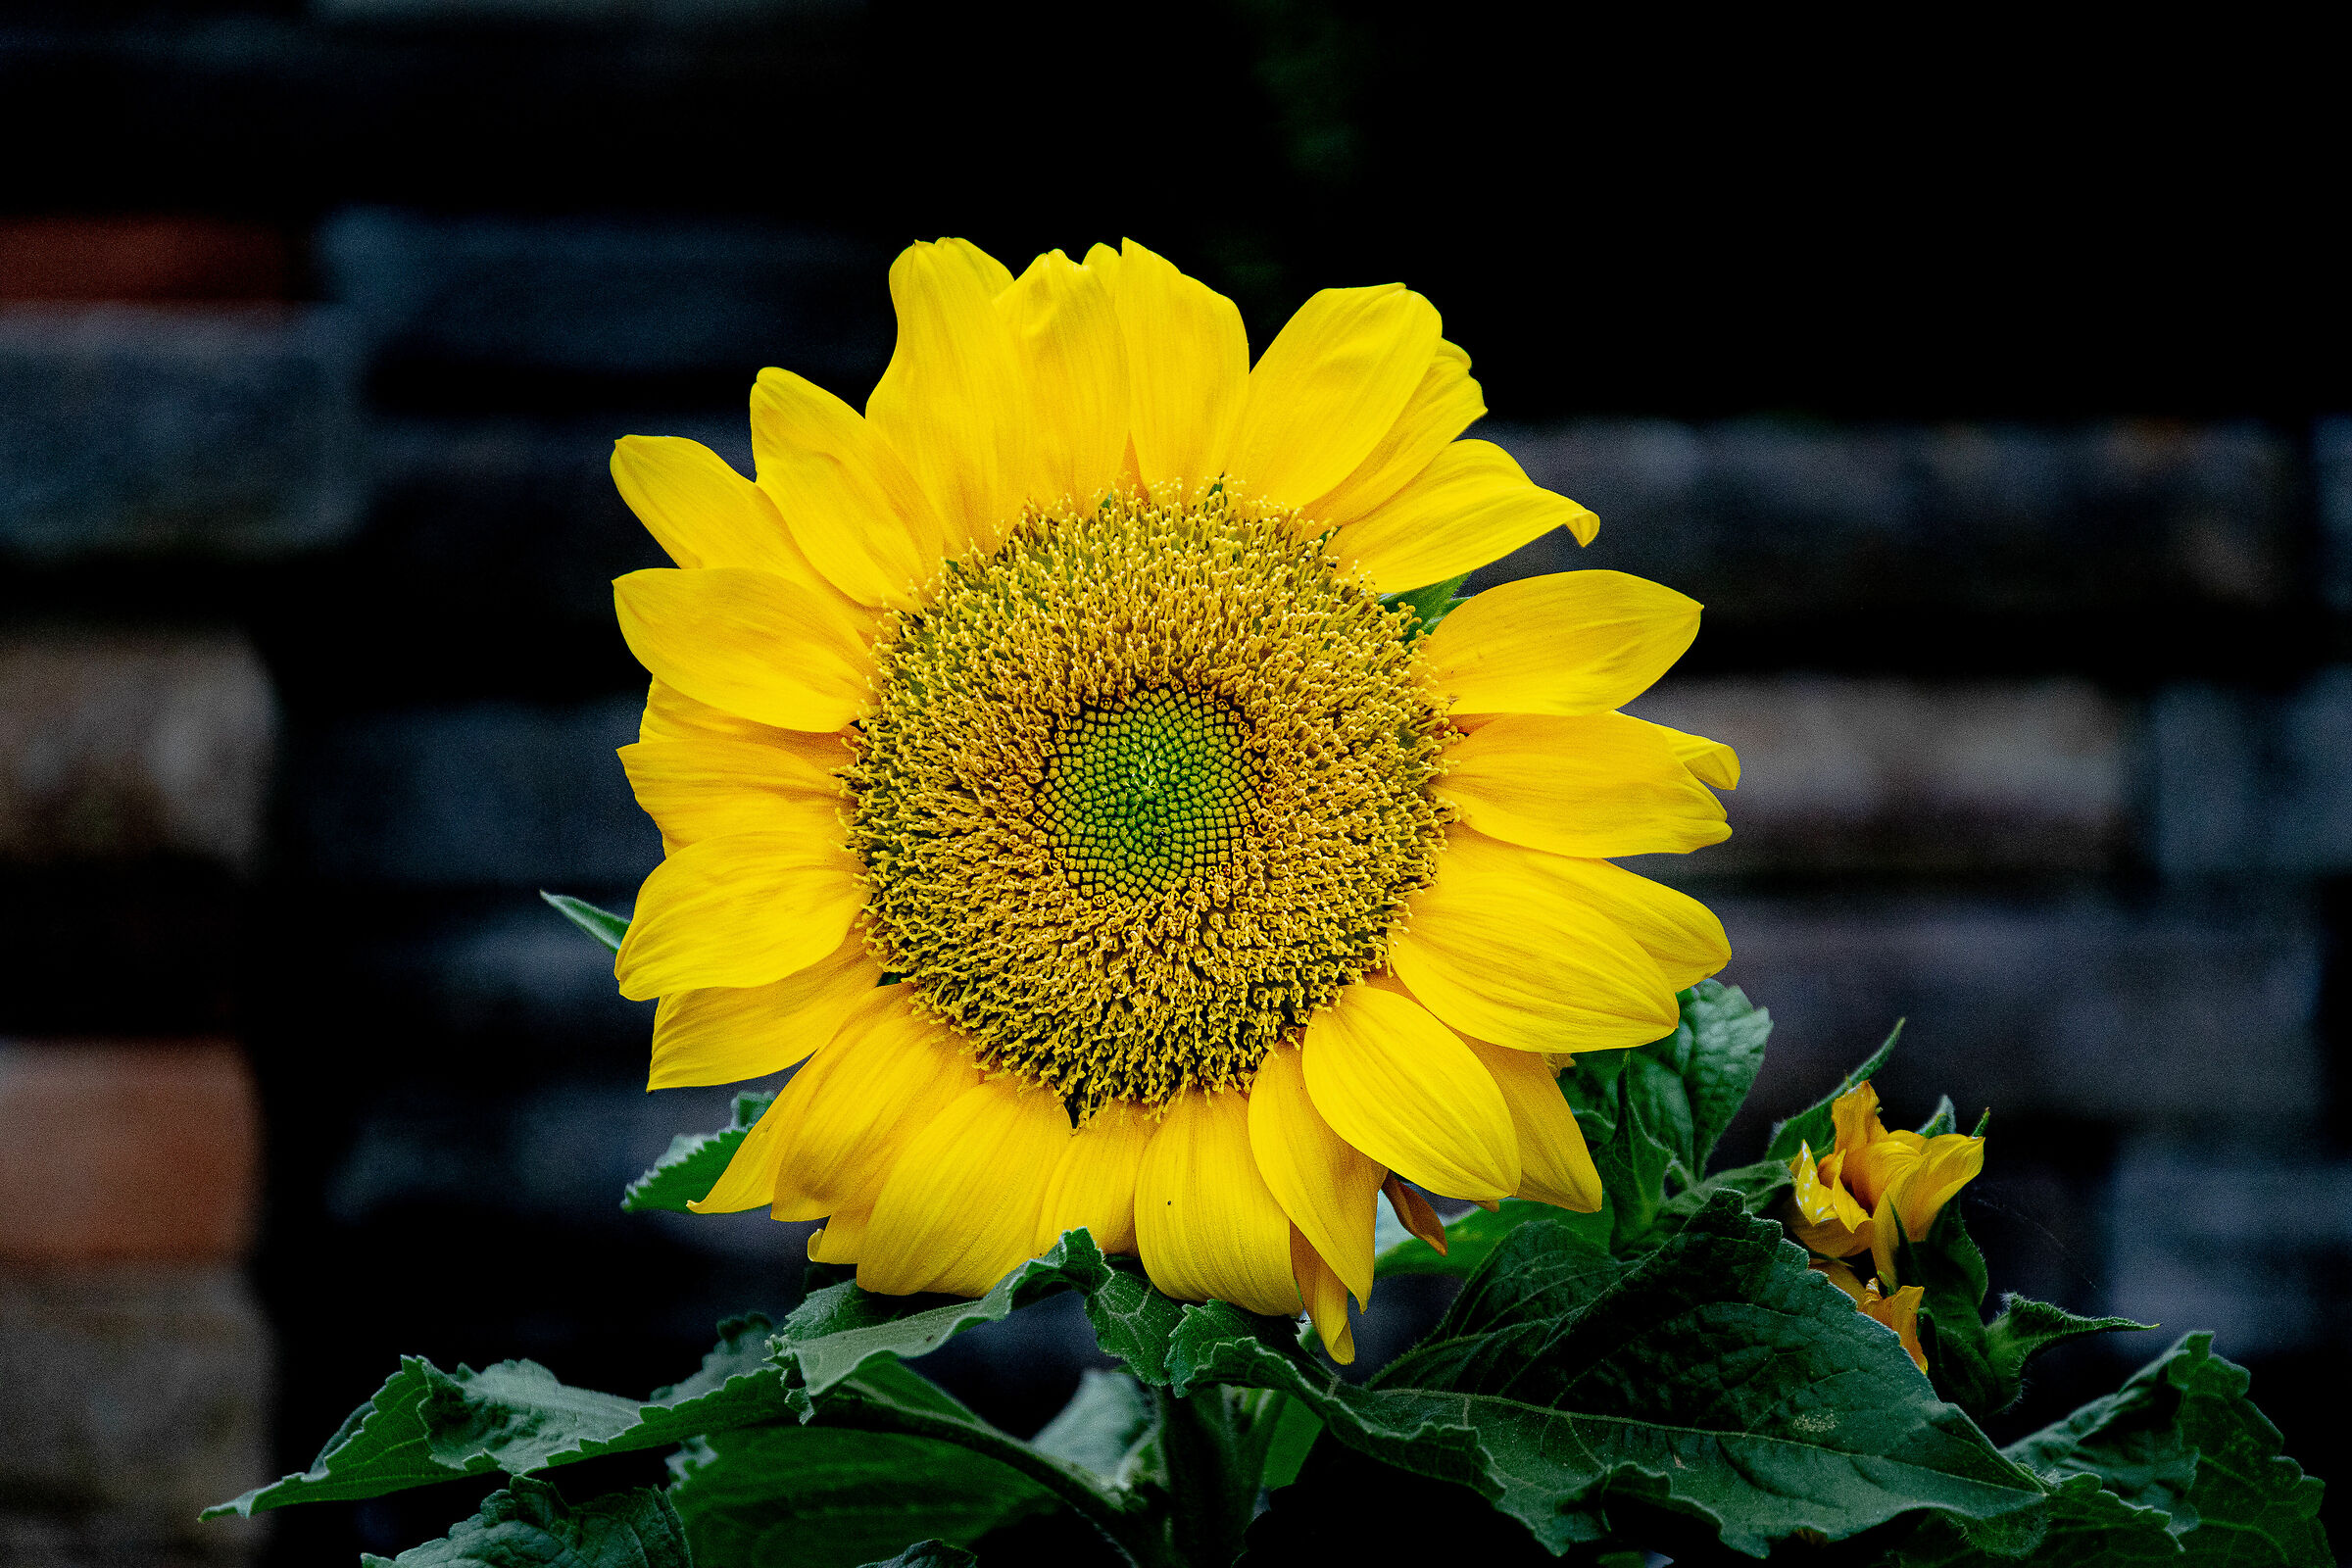 Sunflowers, California...